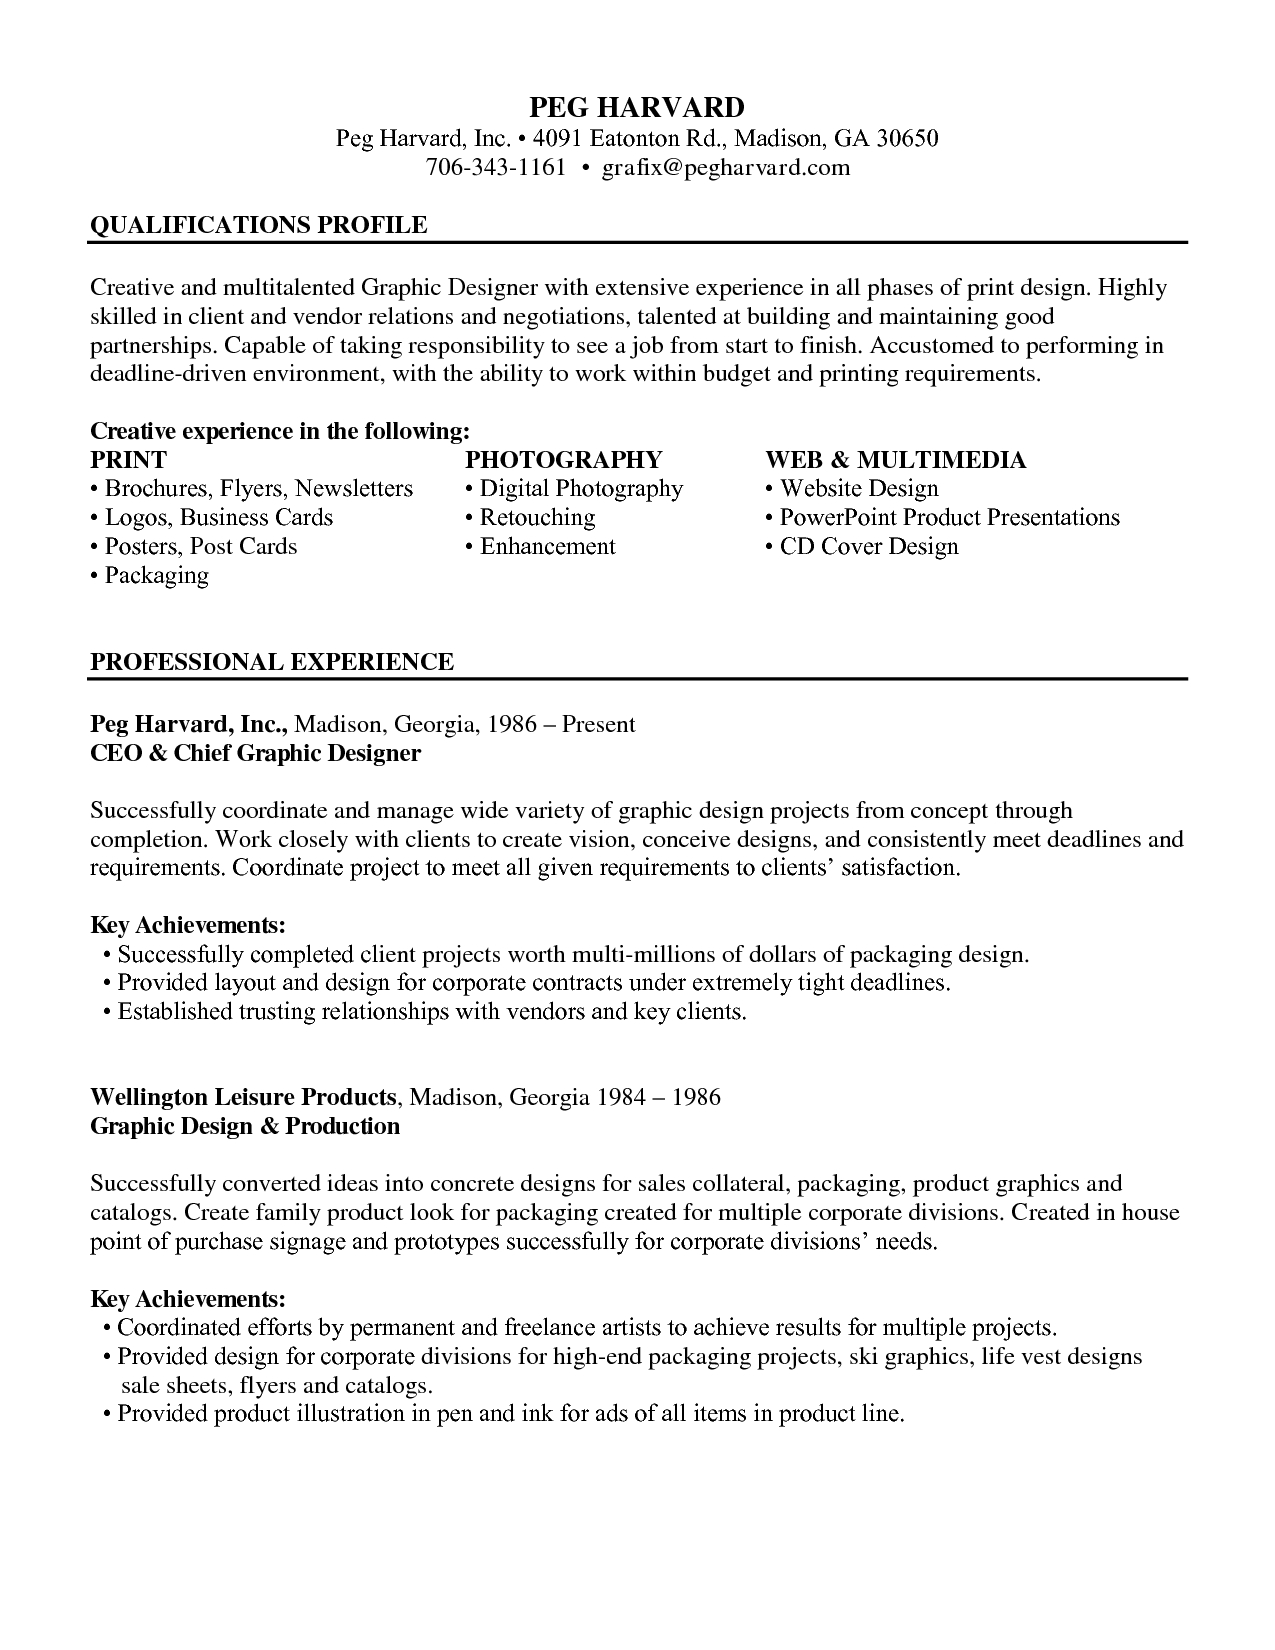 harvard business school resume action verbs